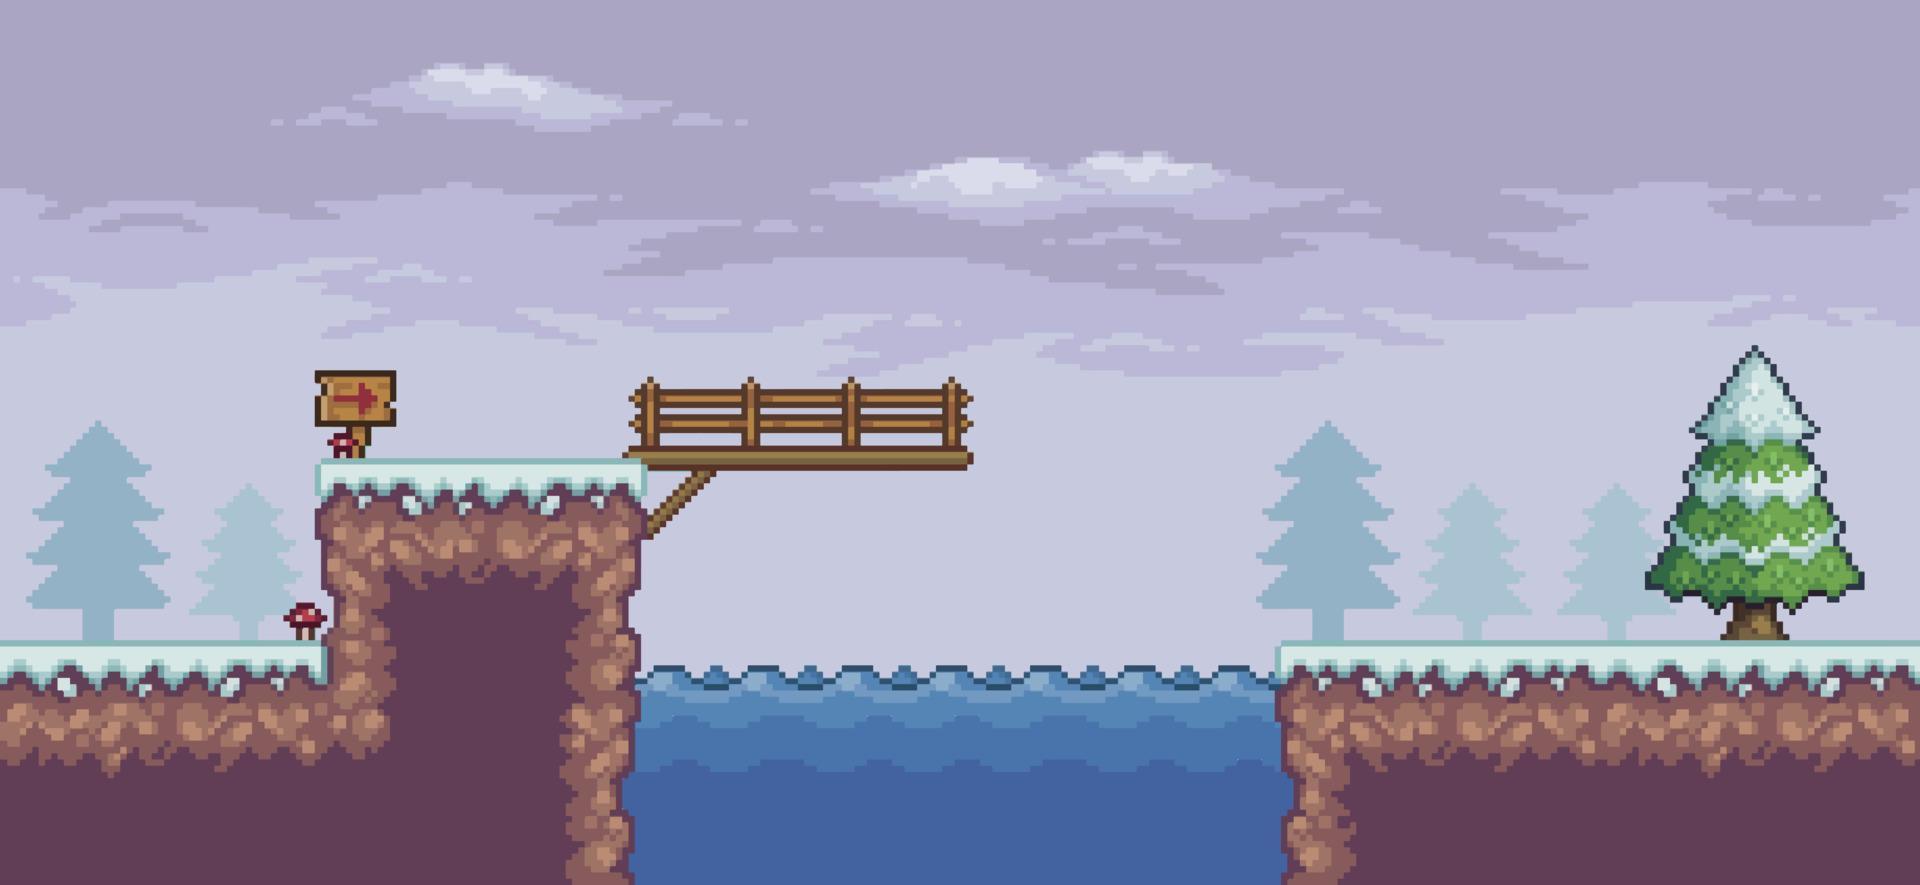 pixel kunst spel tafereel in sneeuw met pijnboom bomen, brug, meer en wolken 8 beetje vector achtergrond